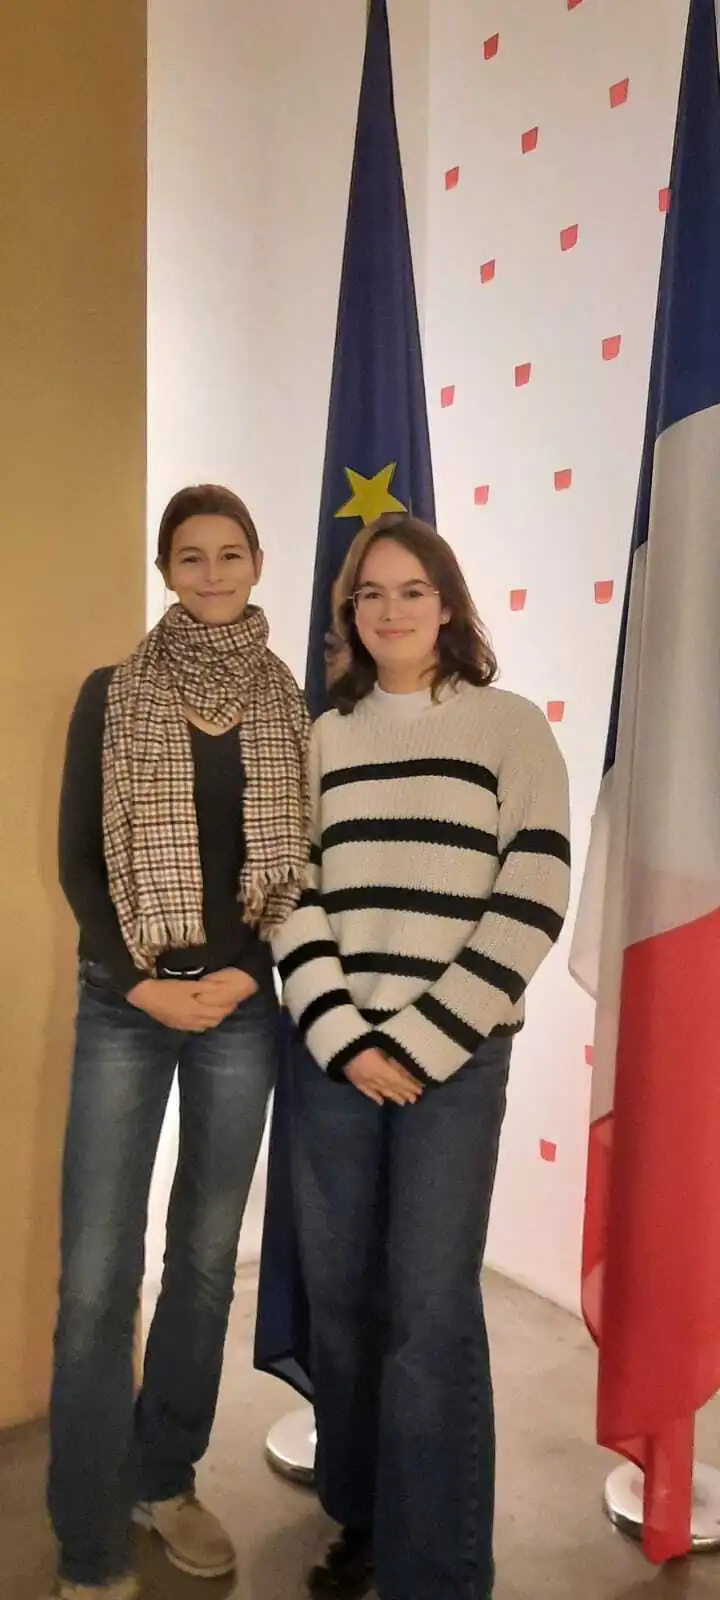 Unsere beiden Deutsch-französische Schülerbotschafterinnen in Berlin